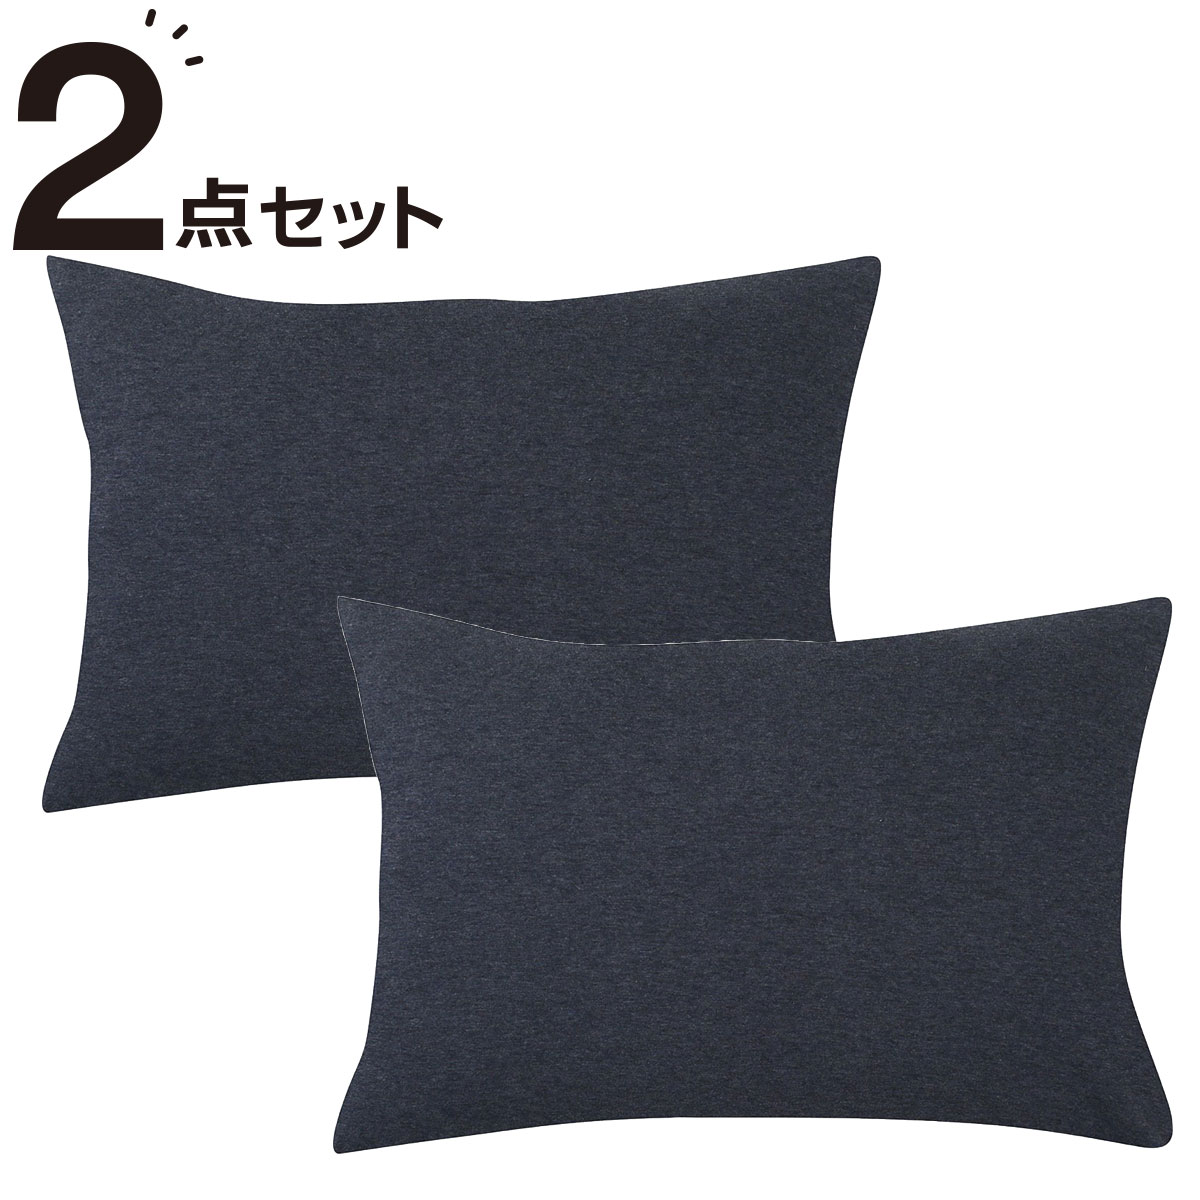 ニトリの枕カバー 2枚セット(Nニット4 NV)   【1年保証】(布団・寝具)